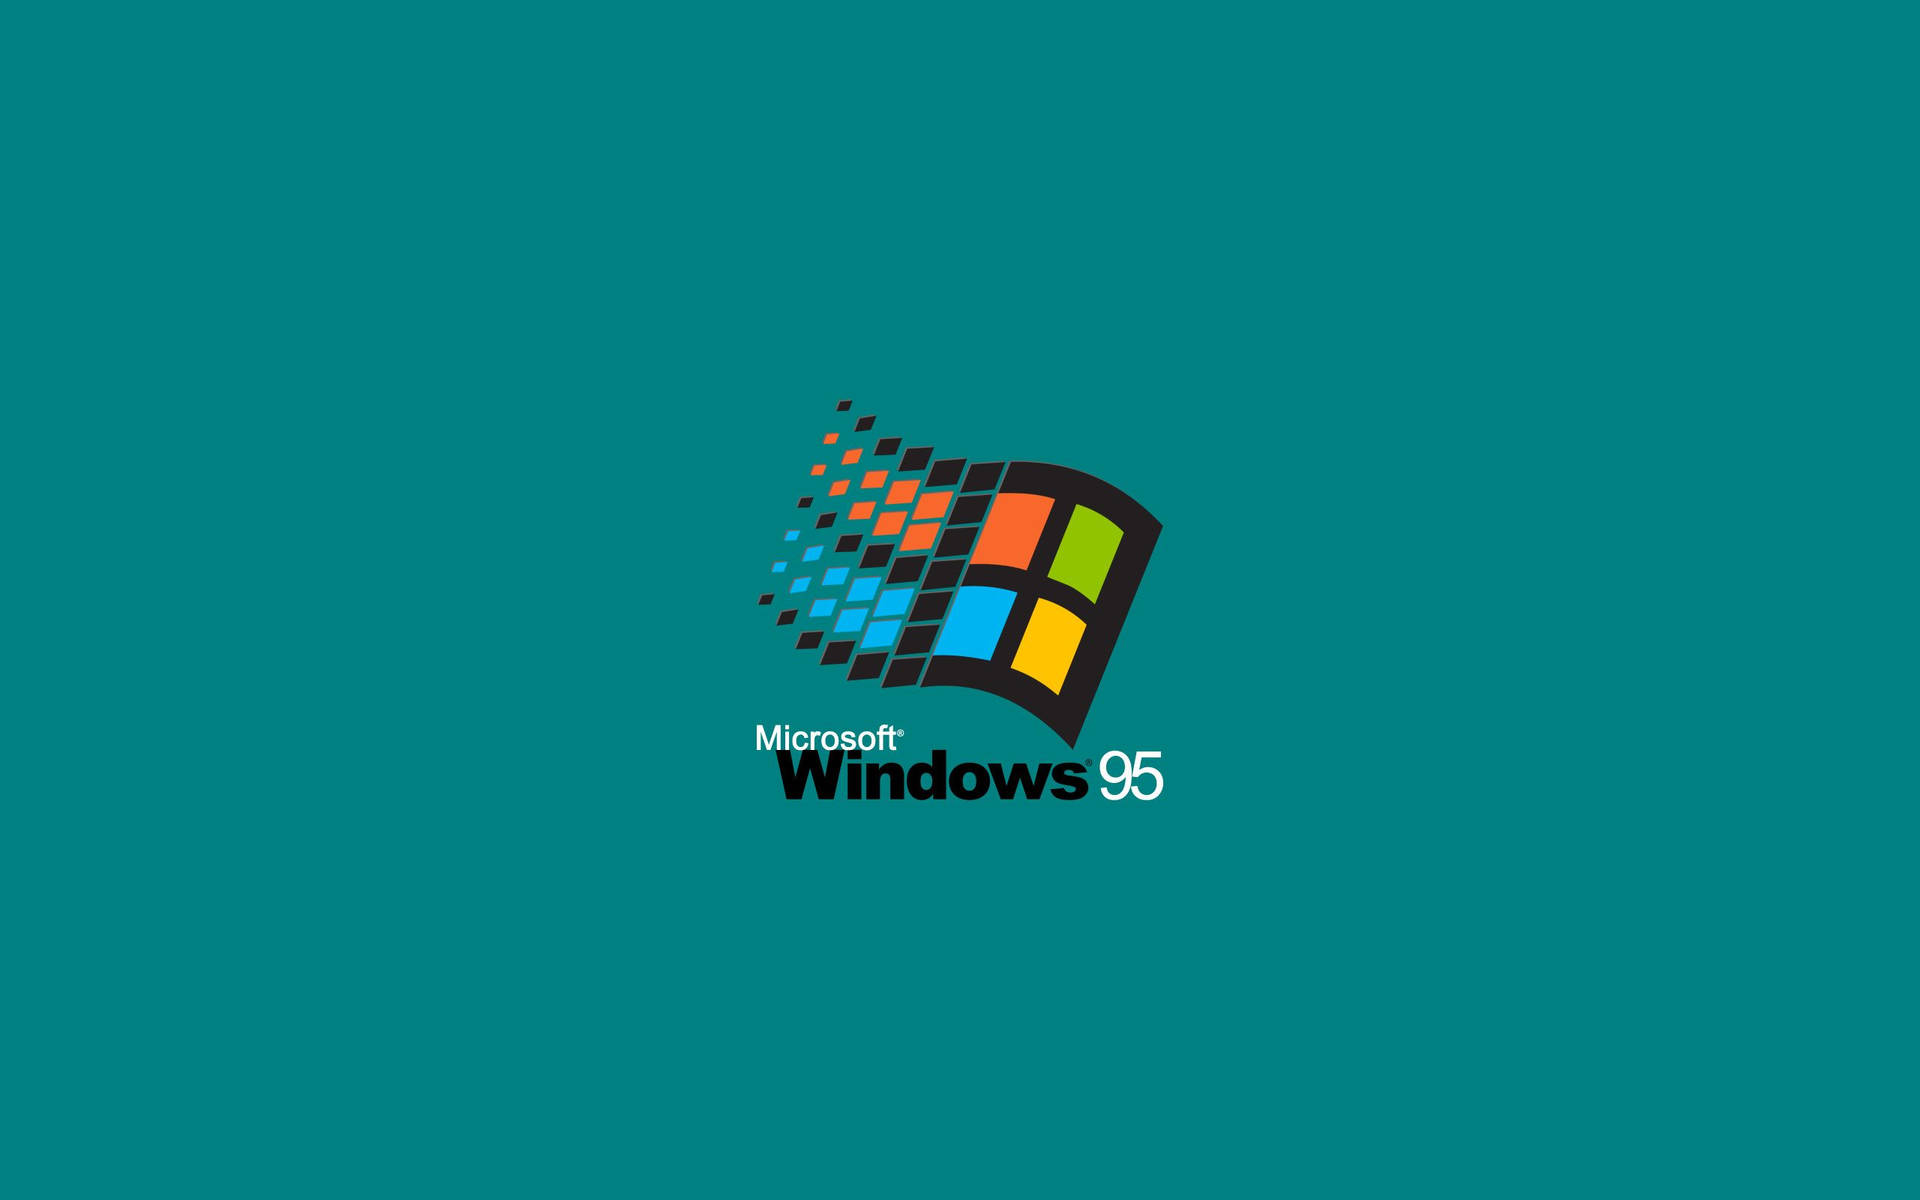 Hãy download những hình nền Windows 98 cổ điển để trang trí màn hình máy tính của bạn. Những hình ảnh đơn giản và cổ điển này sẽ mang đến cho bạn cảm giác hoài niệm về những ngày đầu tiên sử dụng máy tính của mình.